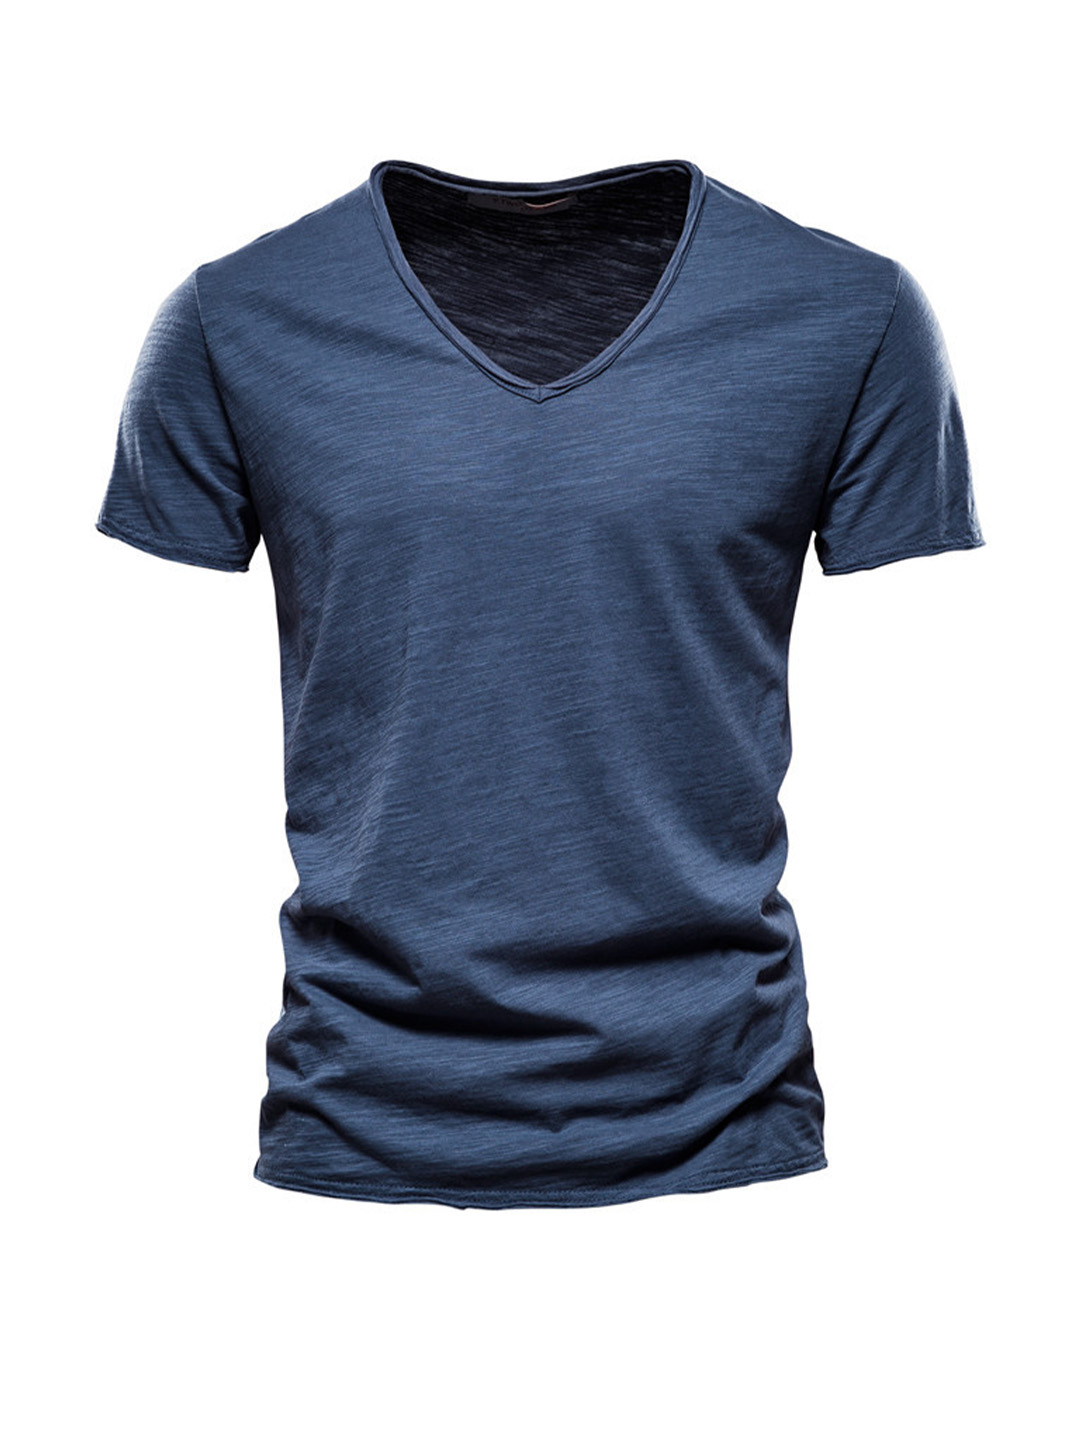 Men's Textured Solid Color V-neck T-shirt-poisonstreetwear.com